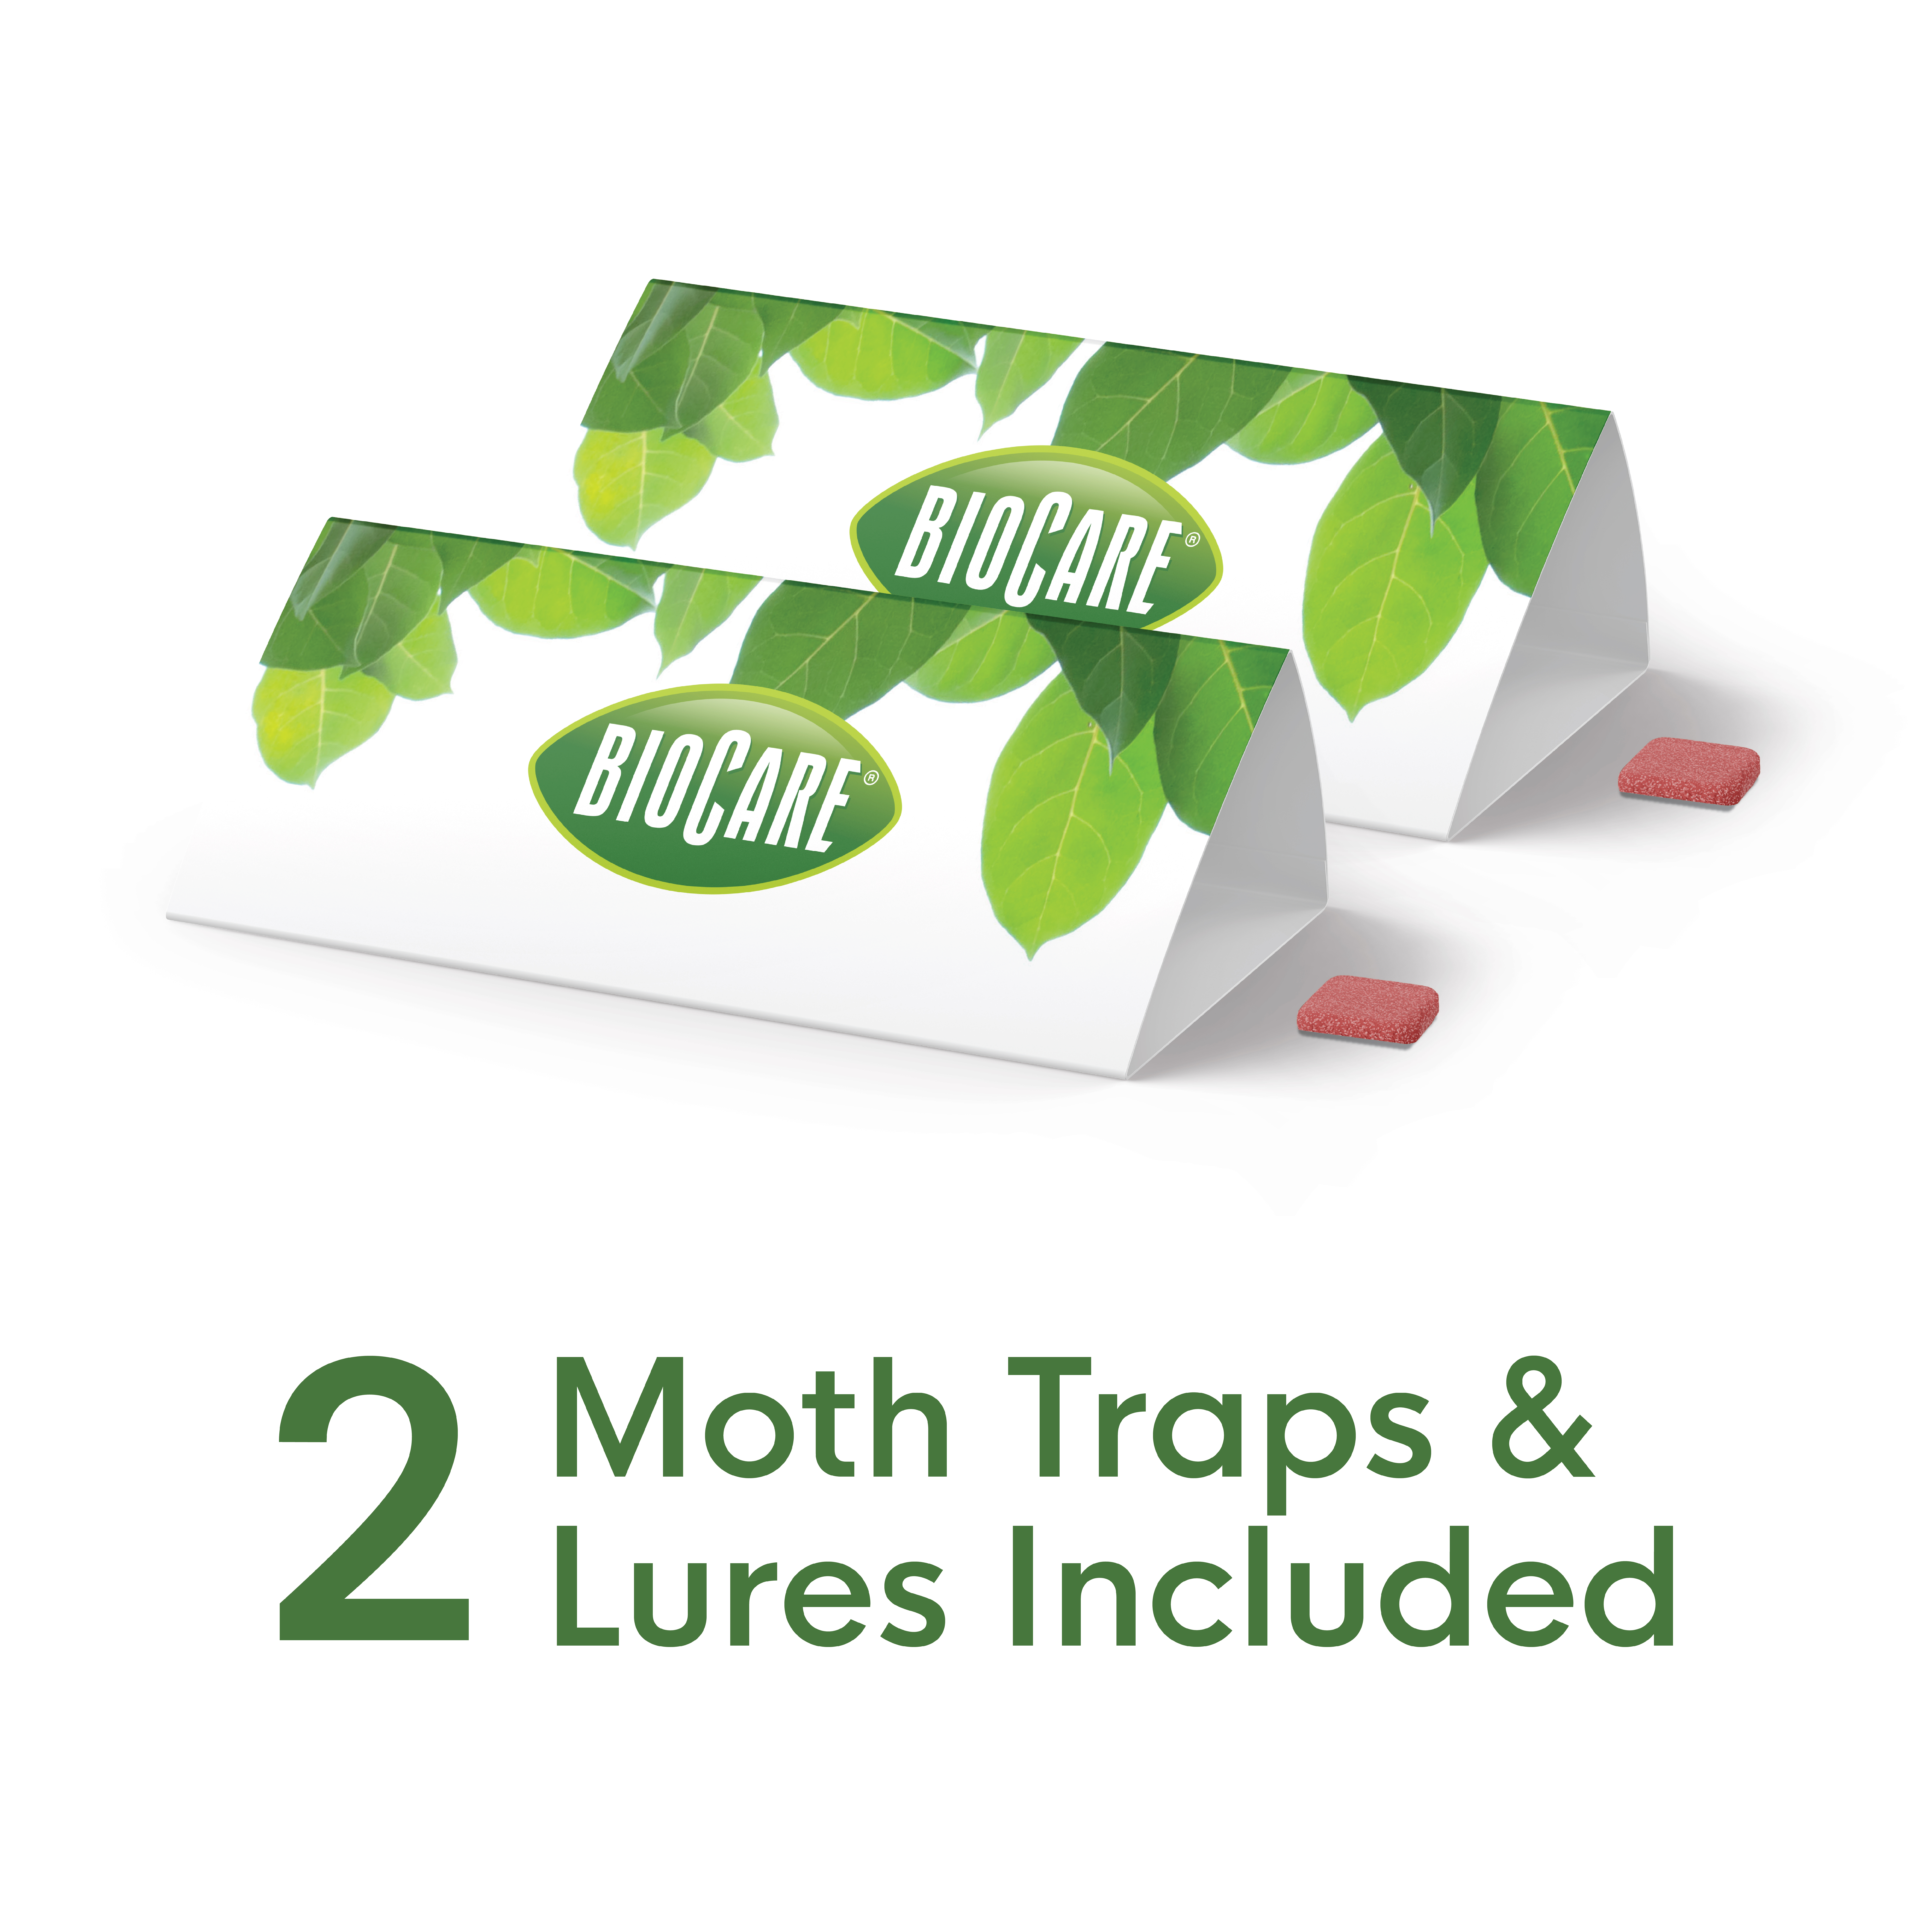 BIOCARE Flour & Pantry Moth Trap, 2 count 